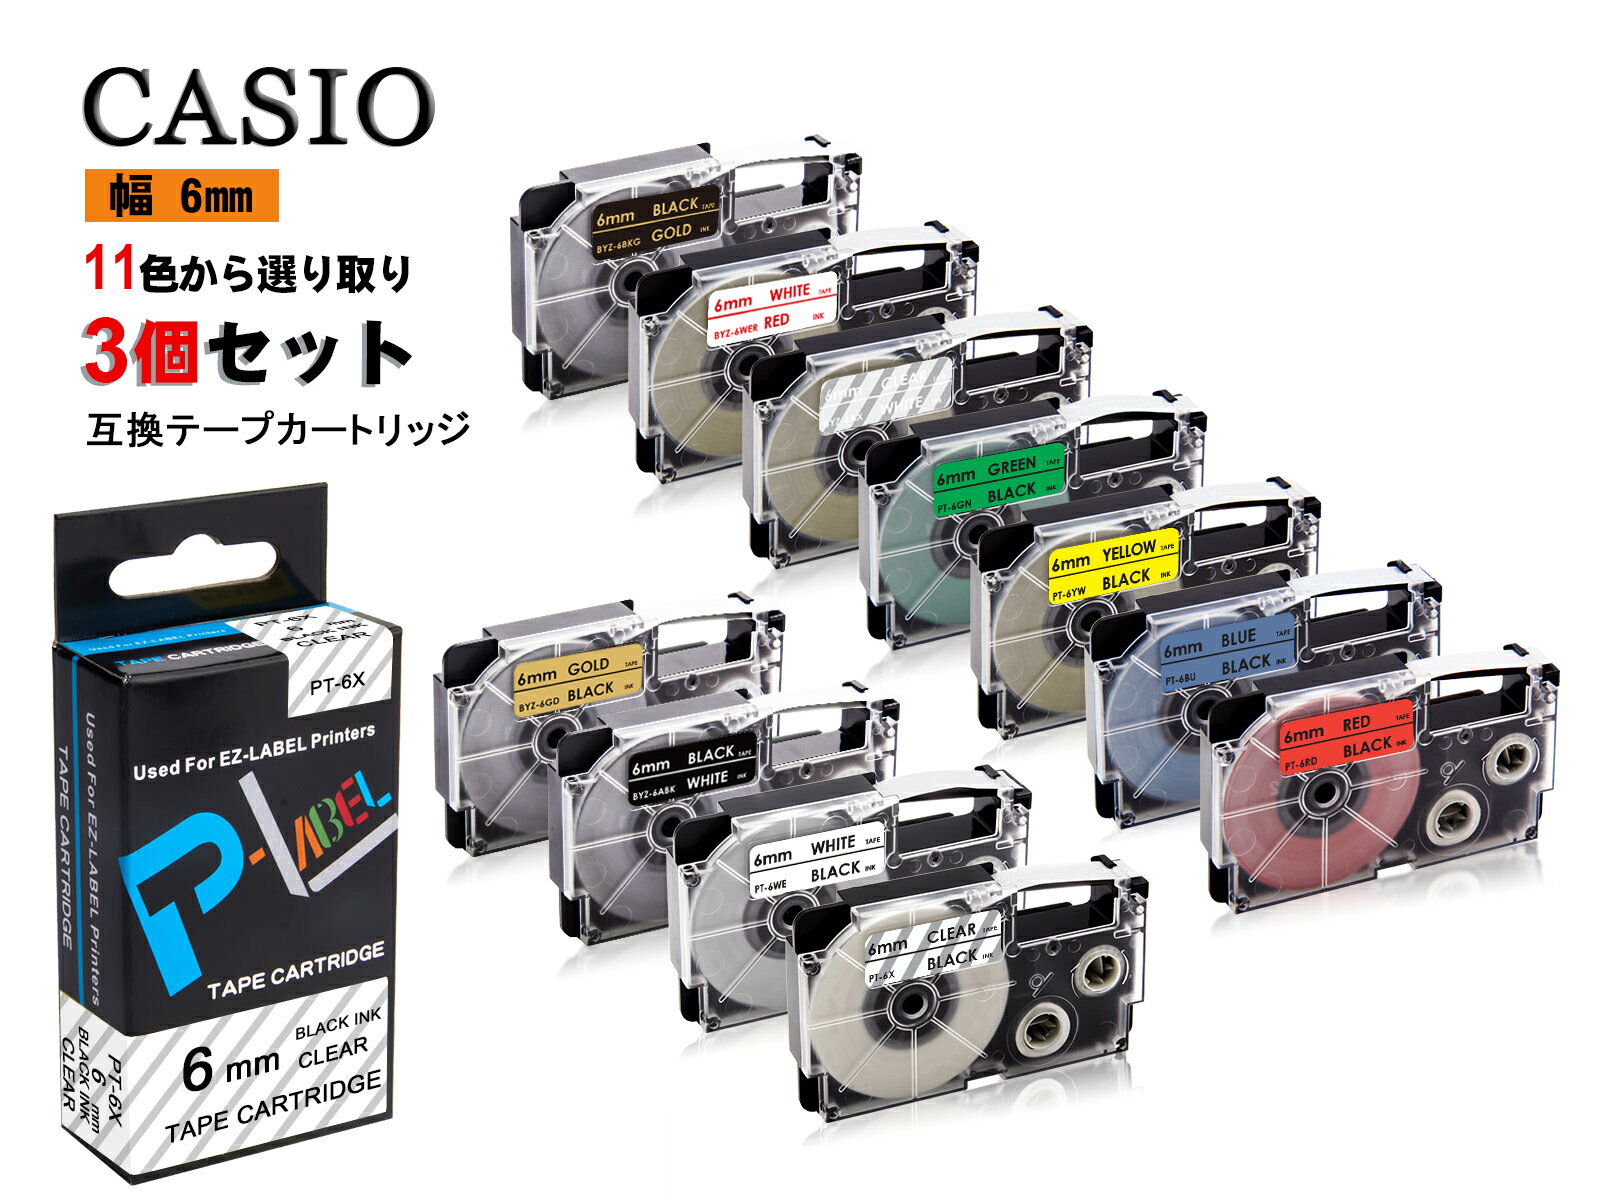 Casio casio カシオ ネームランド 互換テープカートリッジ テプラテープ 互換 幅 6mm 長さ 8m 全 11色 テープカートリッジ カラーラベル カシオ用 ネームランド 3個セット 2年保証可能 PT910BT